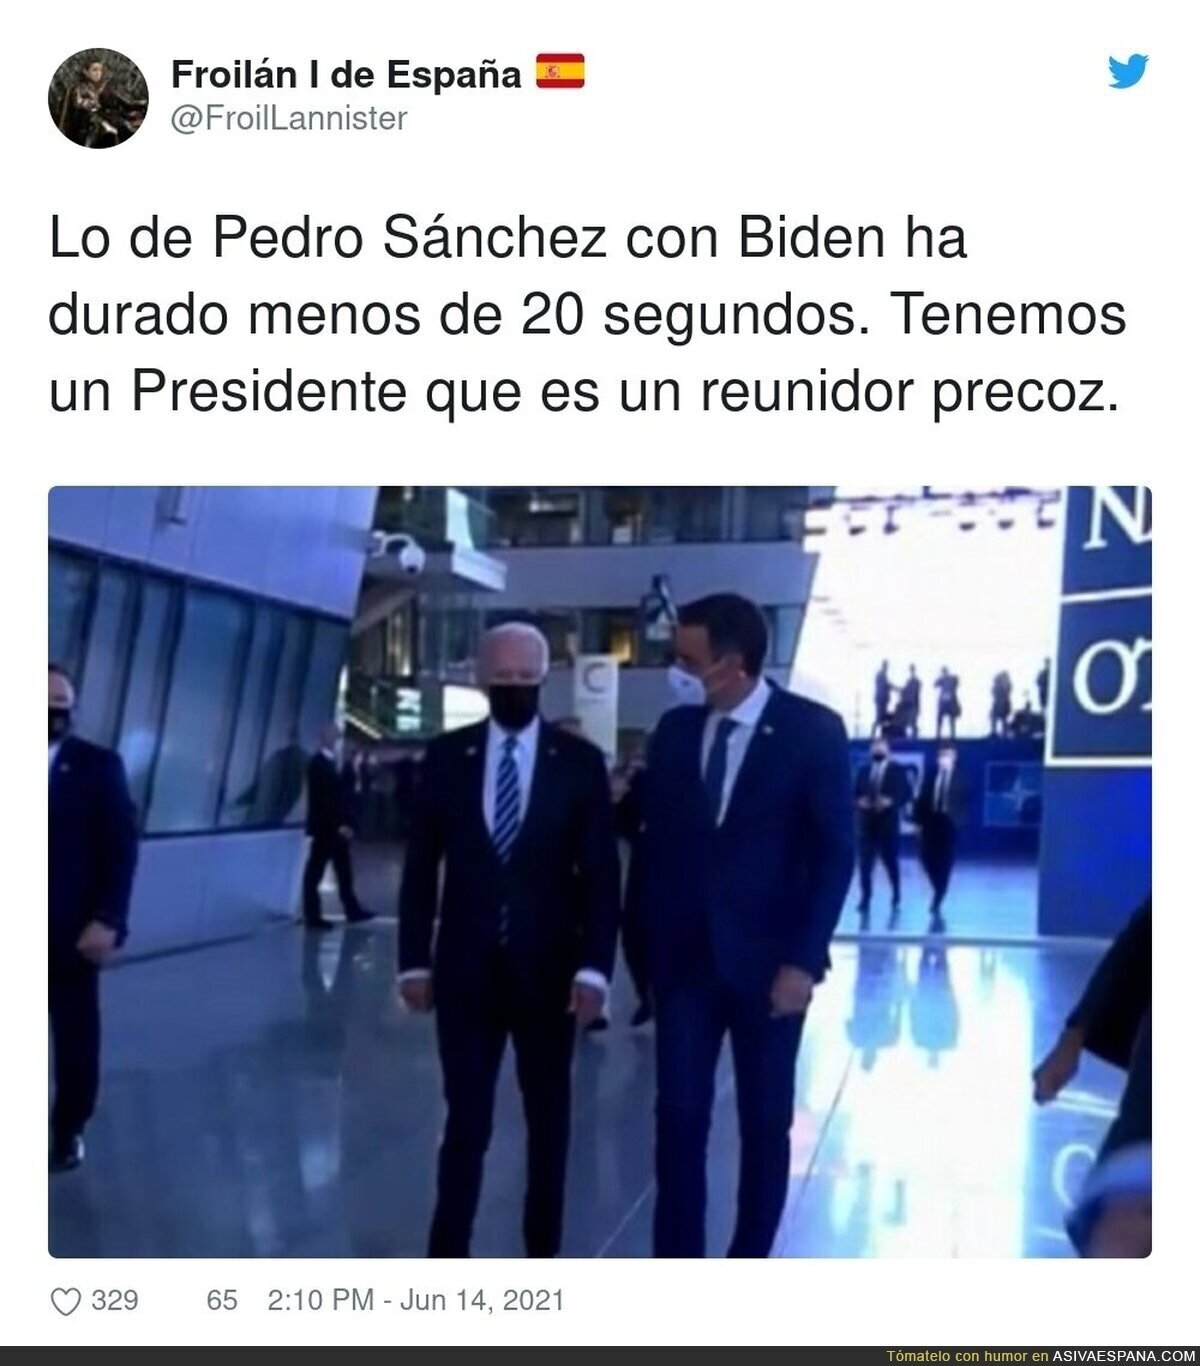 Que bien se reúne con Biden nuestro Pedro Sánchez